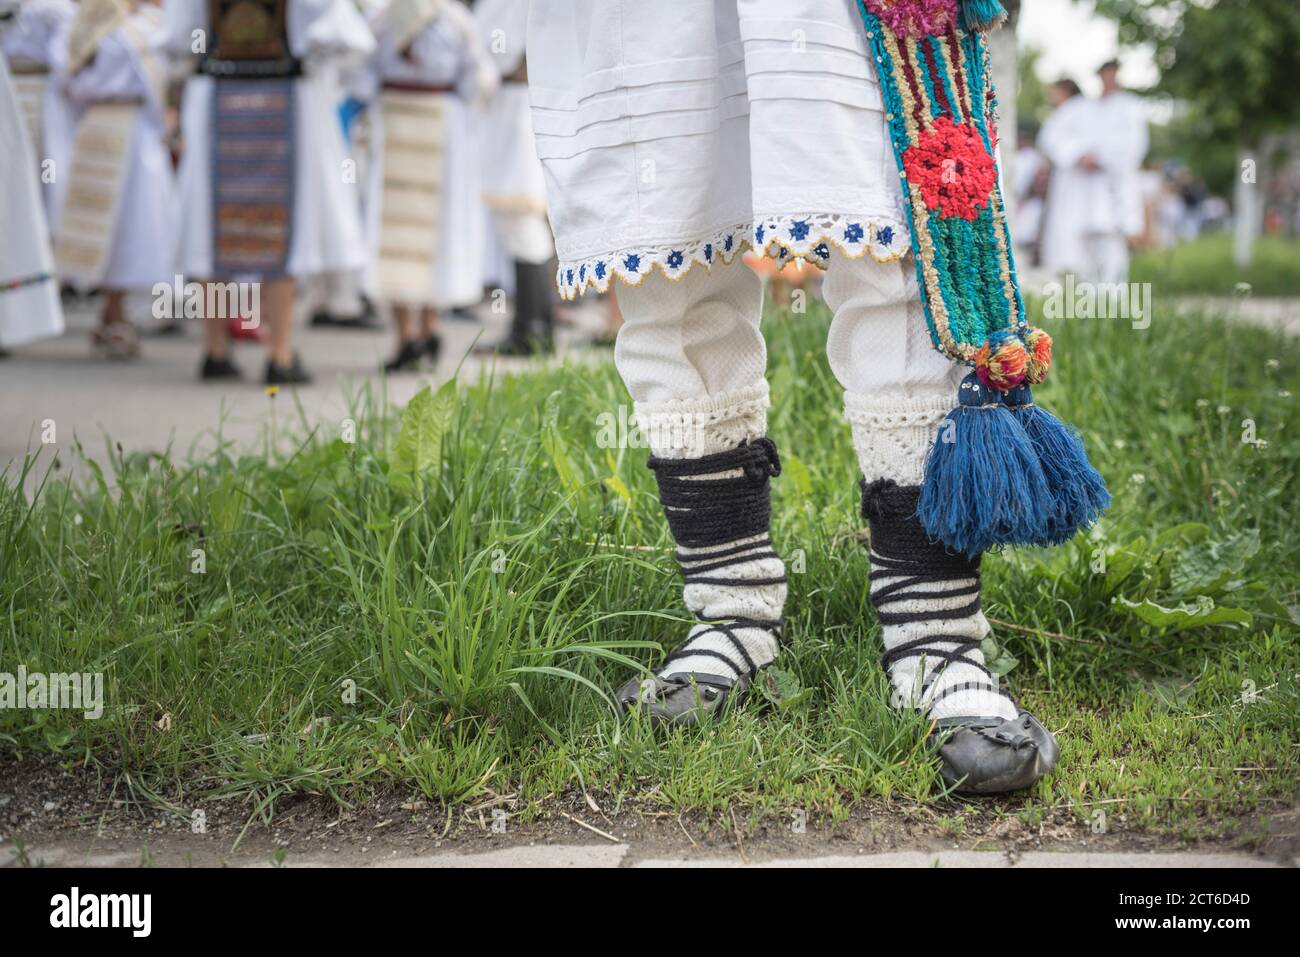 Festival des vêtements traditionnels de Roumanie, Nasaud, Transylvanie, Roumanie Banque D'Images